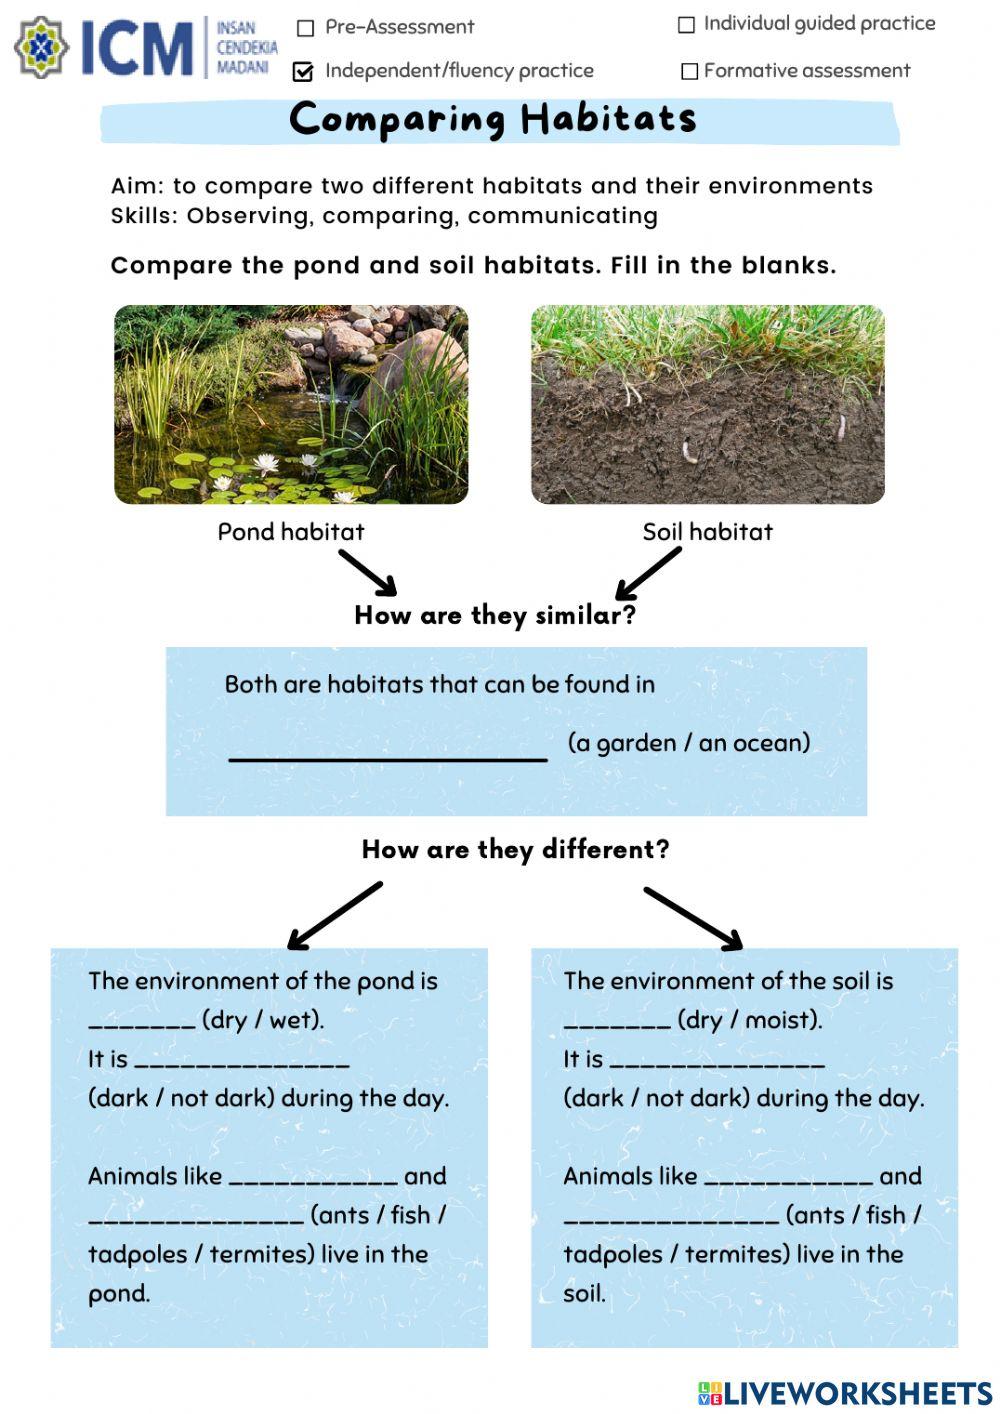 Comparing habitats